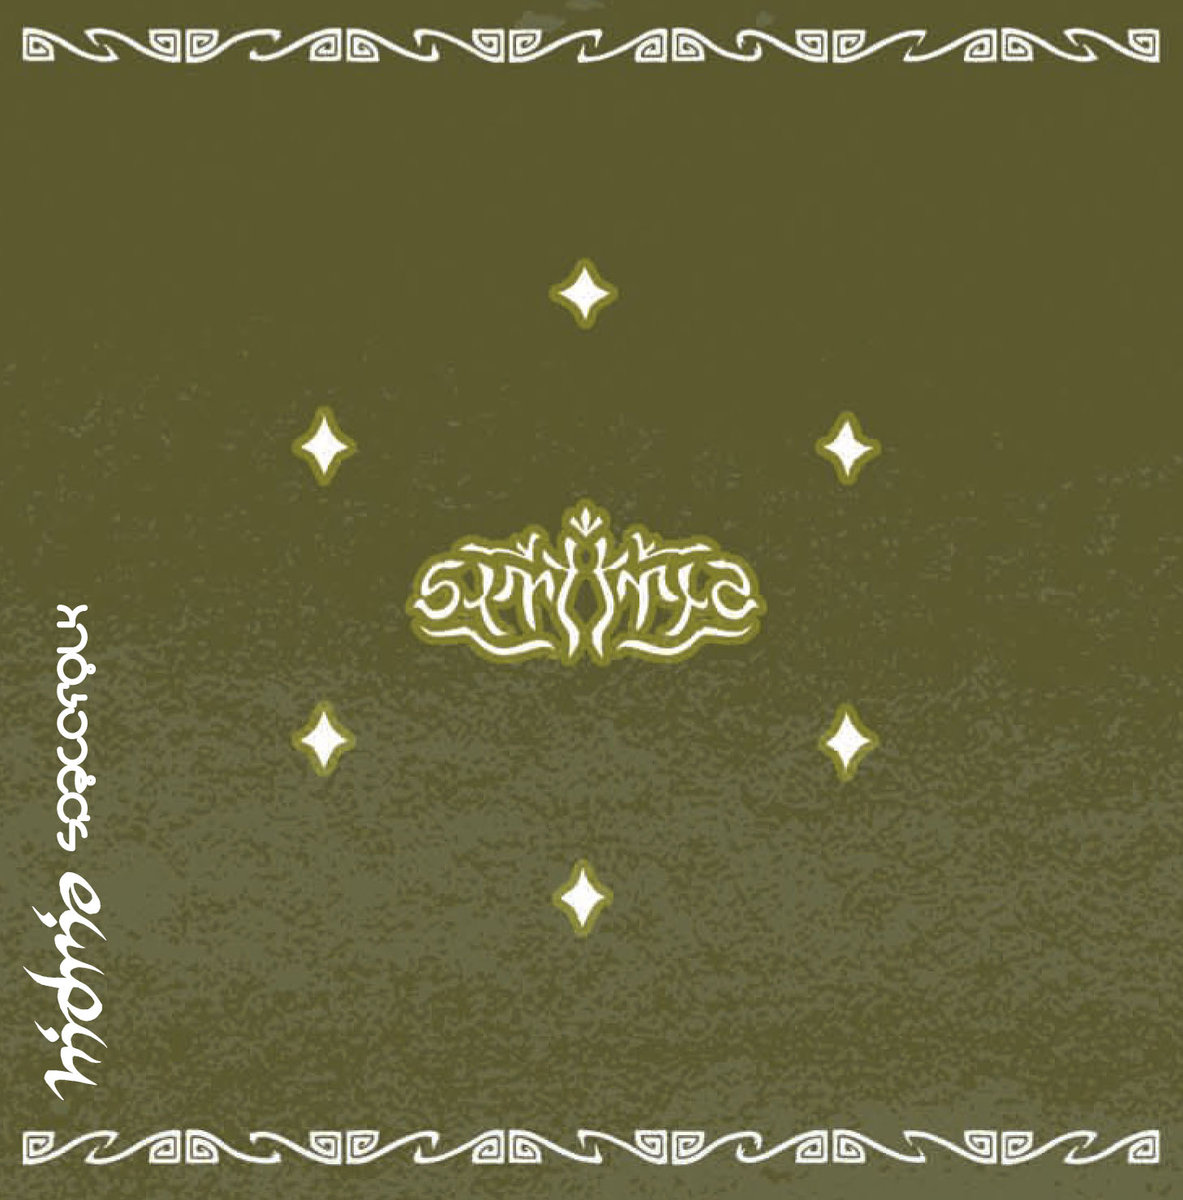 Hidria Spacefolk - Symetria @ 'Symetria' album (alternative, astrobeat)